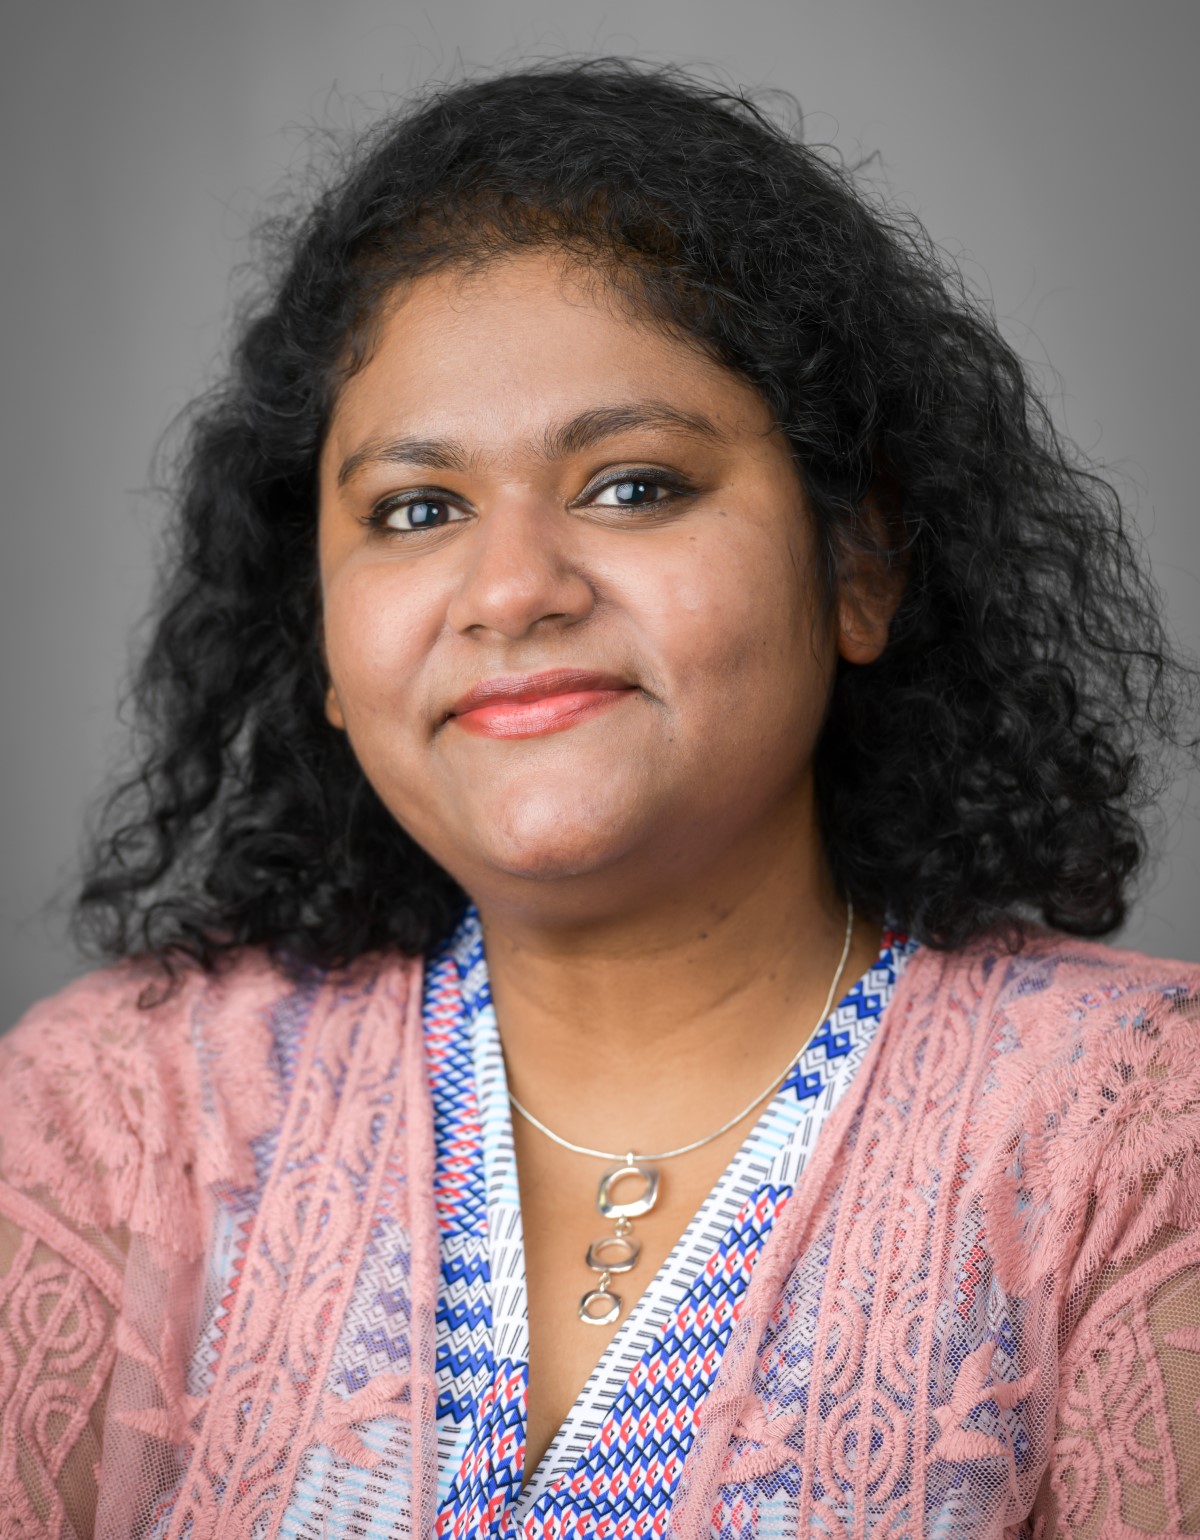 Sharmistha Mitra, Ph.D.
